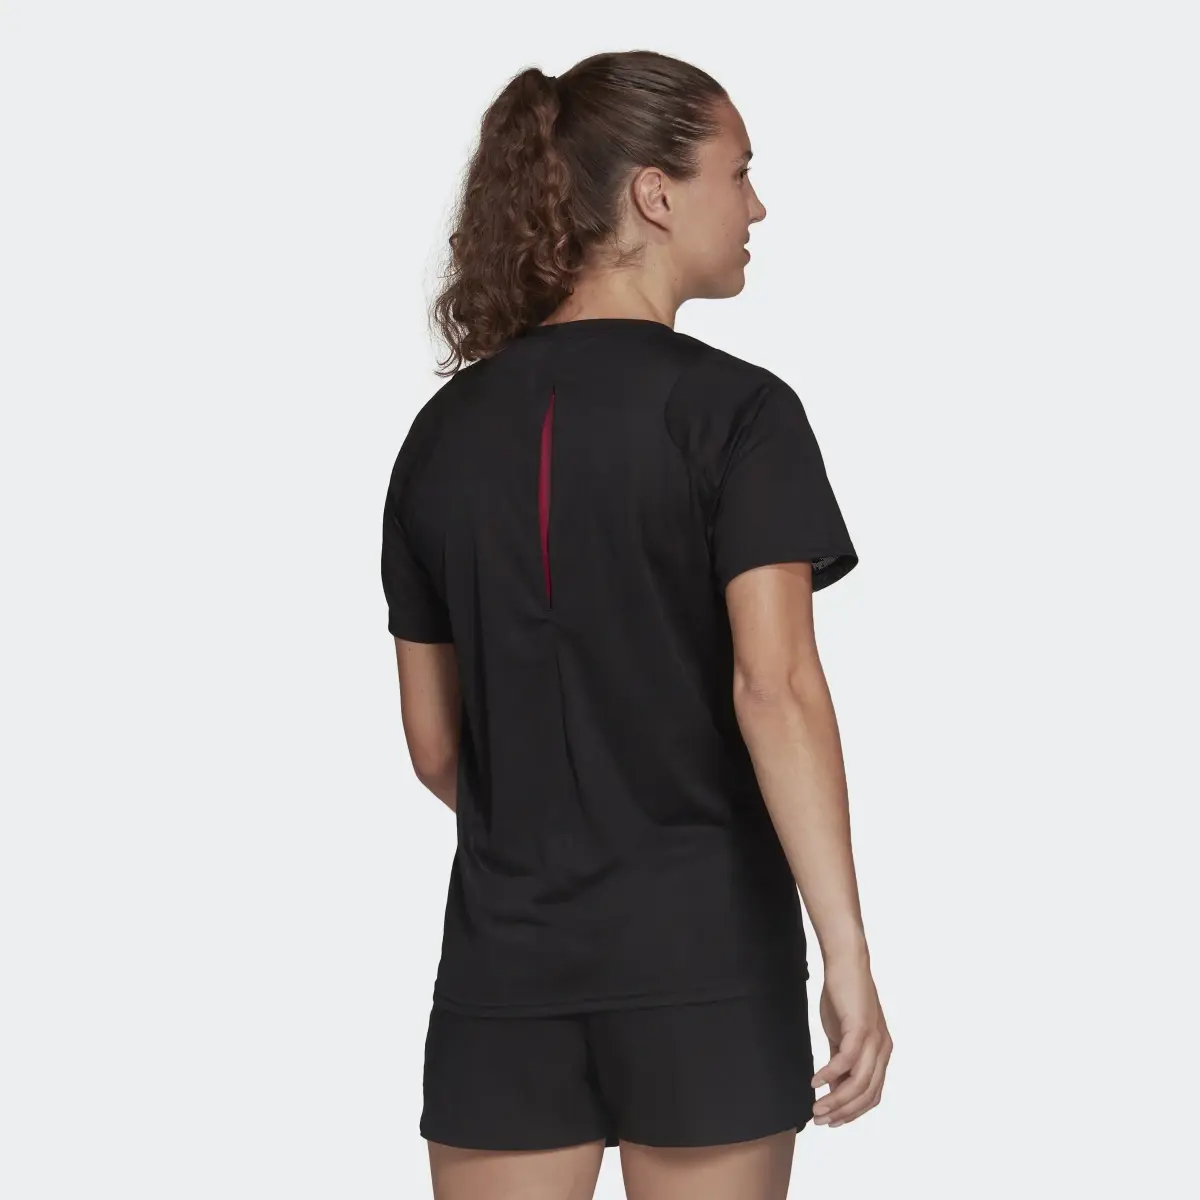 Adidas T-shirt de running Made To Be Remade. 3